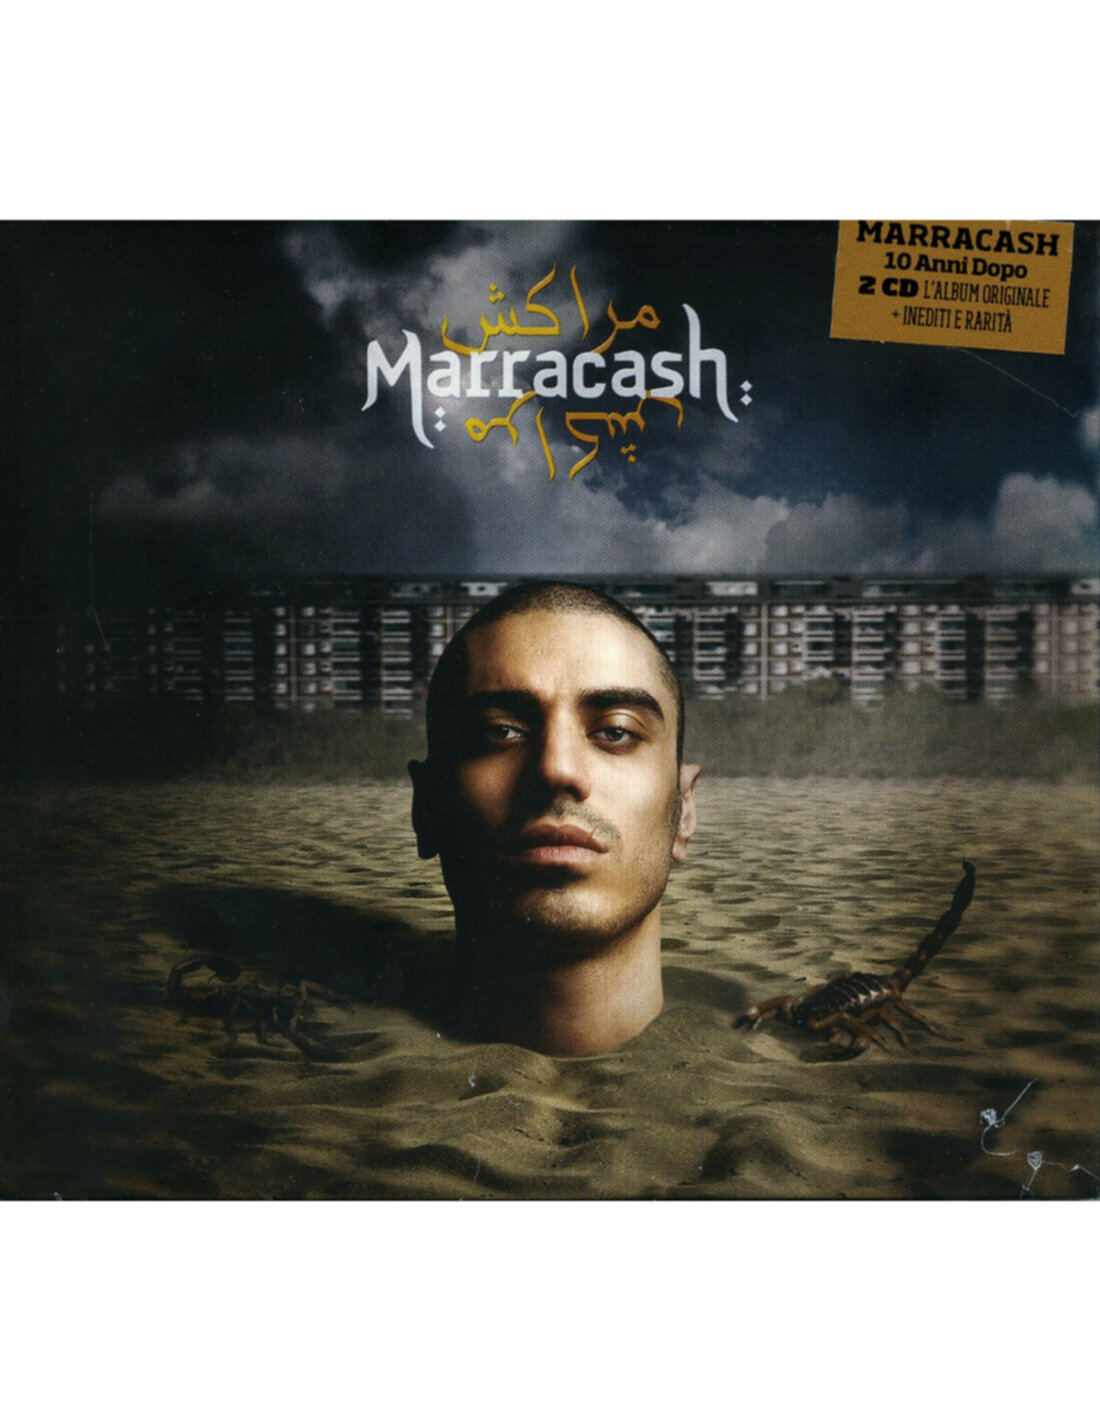 Marracash - Marracash 10 Anni Dopo (Album Originale E Inediti E Rarita 8  Tracce) - (CD)